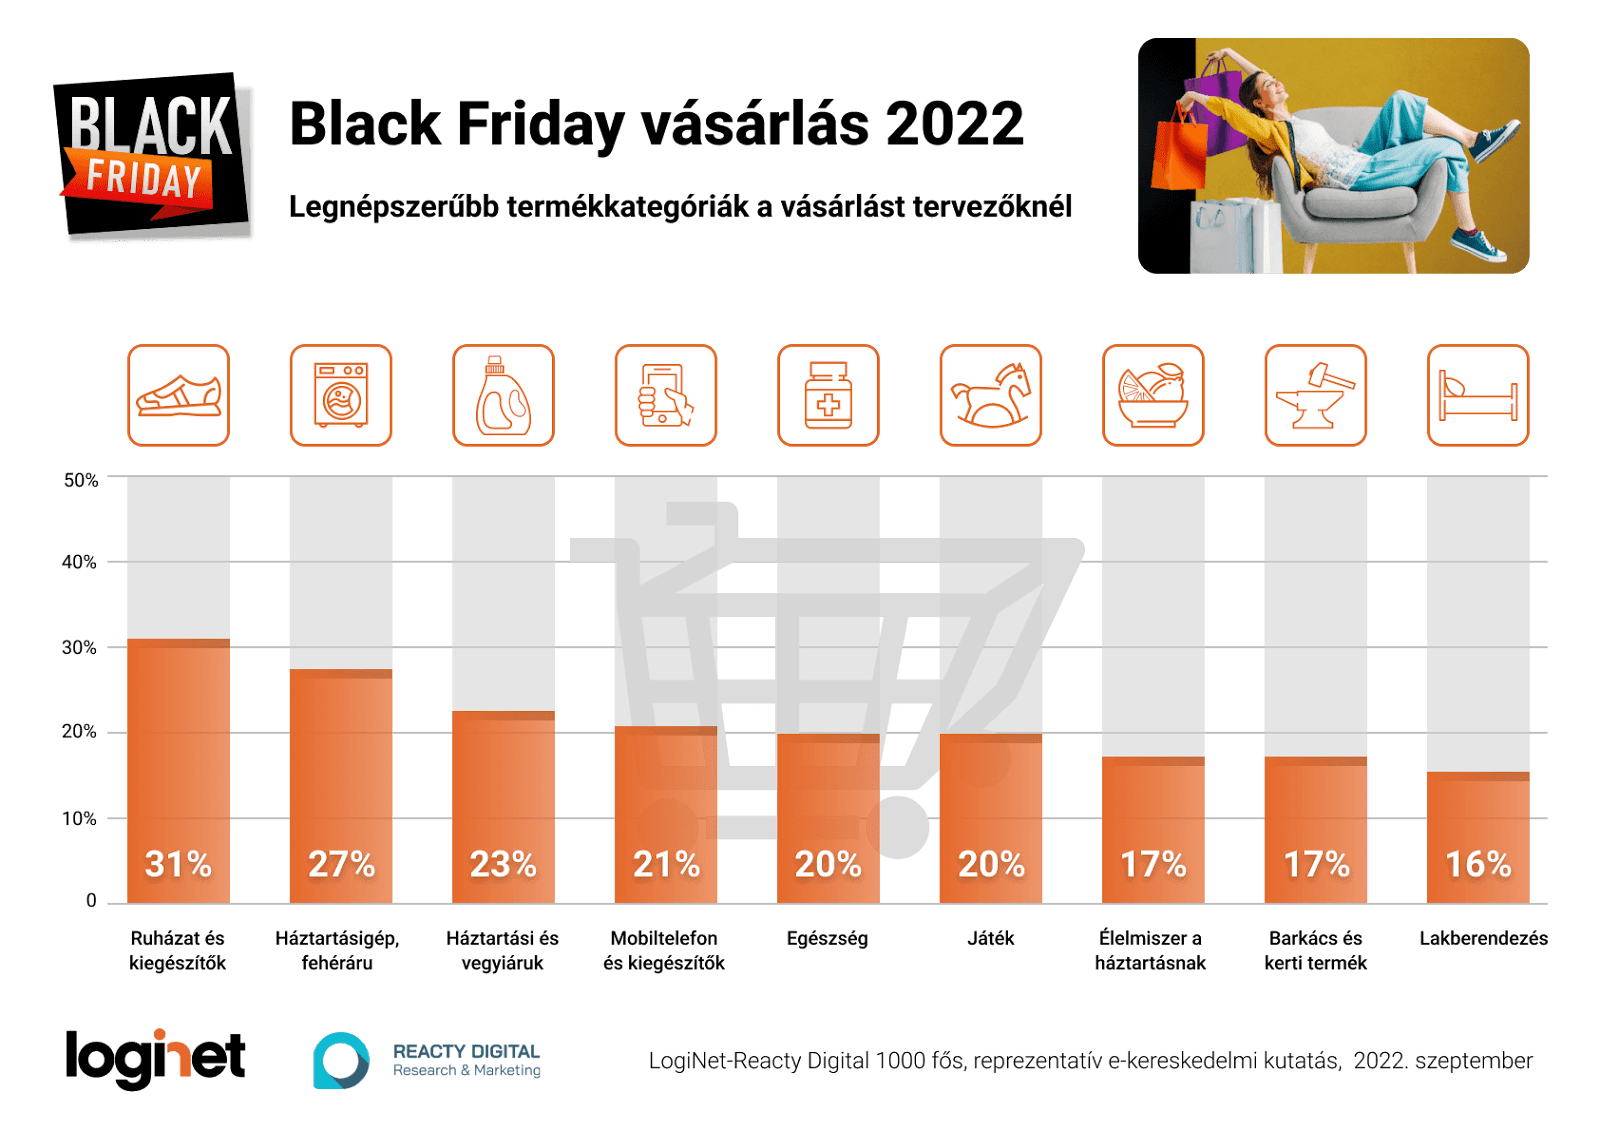 Termékkategóriák - Firss reprezentatív Black Friday kutatás - LogiNet - Reacty Digital